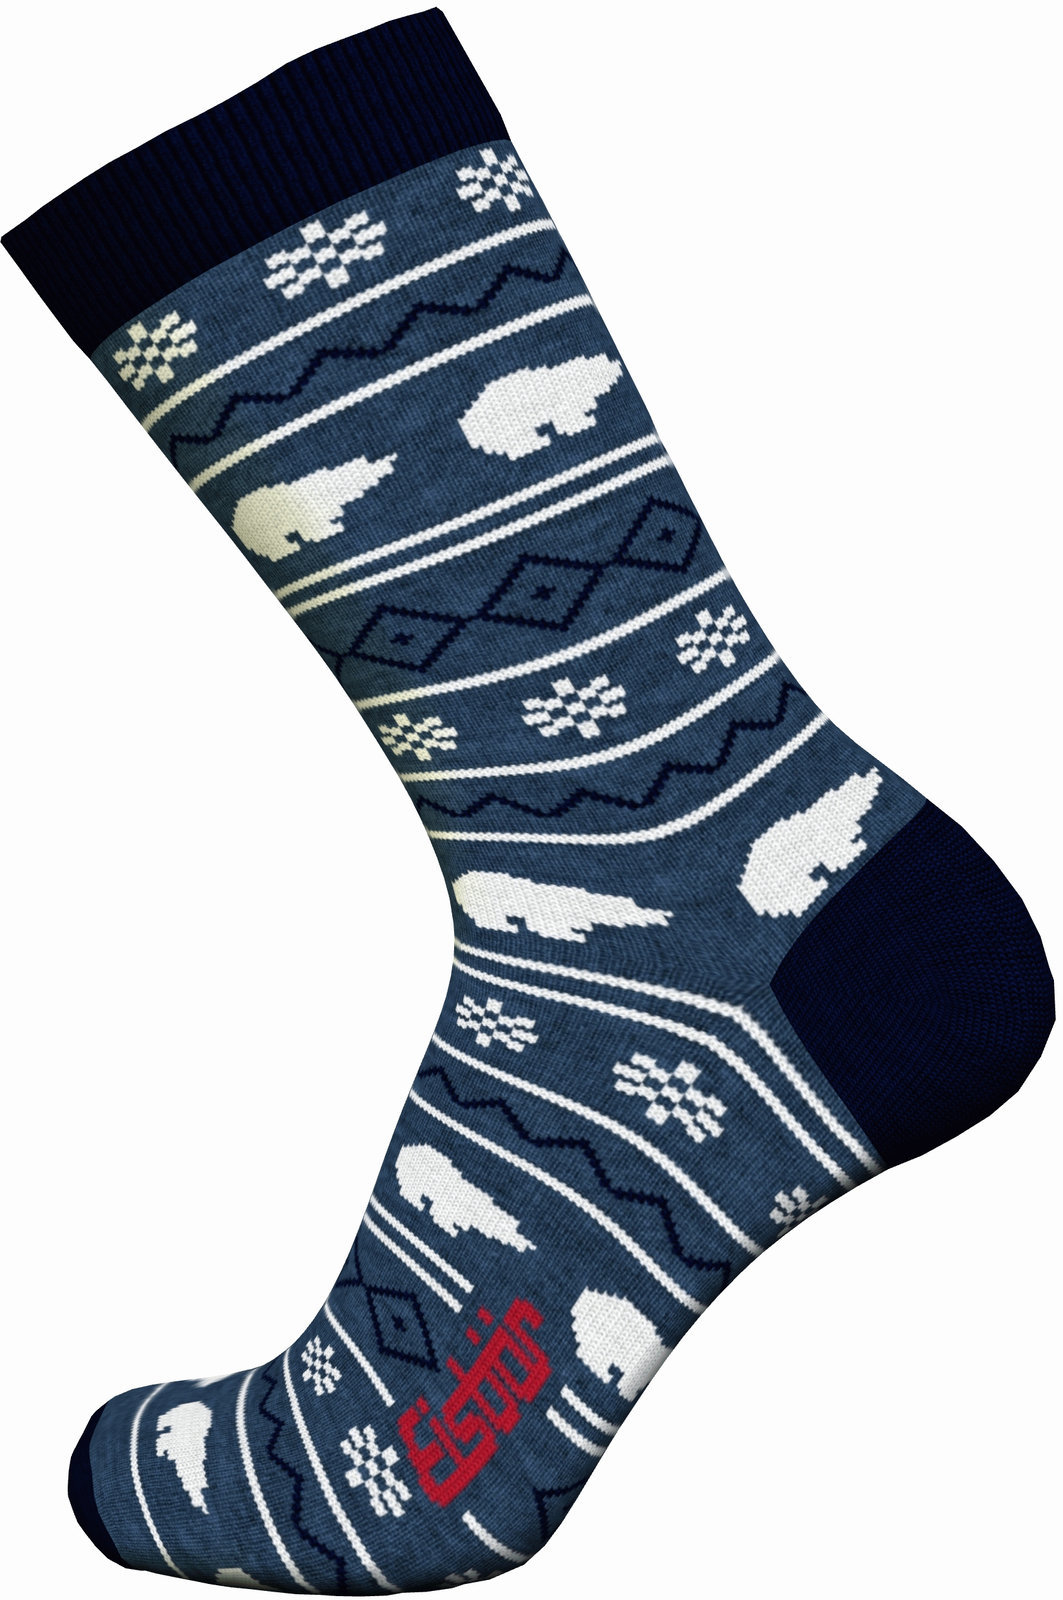 Κάλτσες Σκι Eisbär Lifestyle Jacquard Avio/Navy-Grey/White 43-45 Κάλτσες Σκι